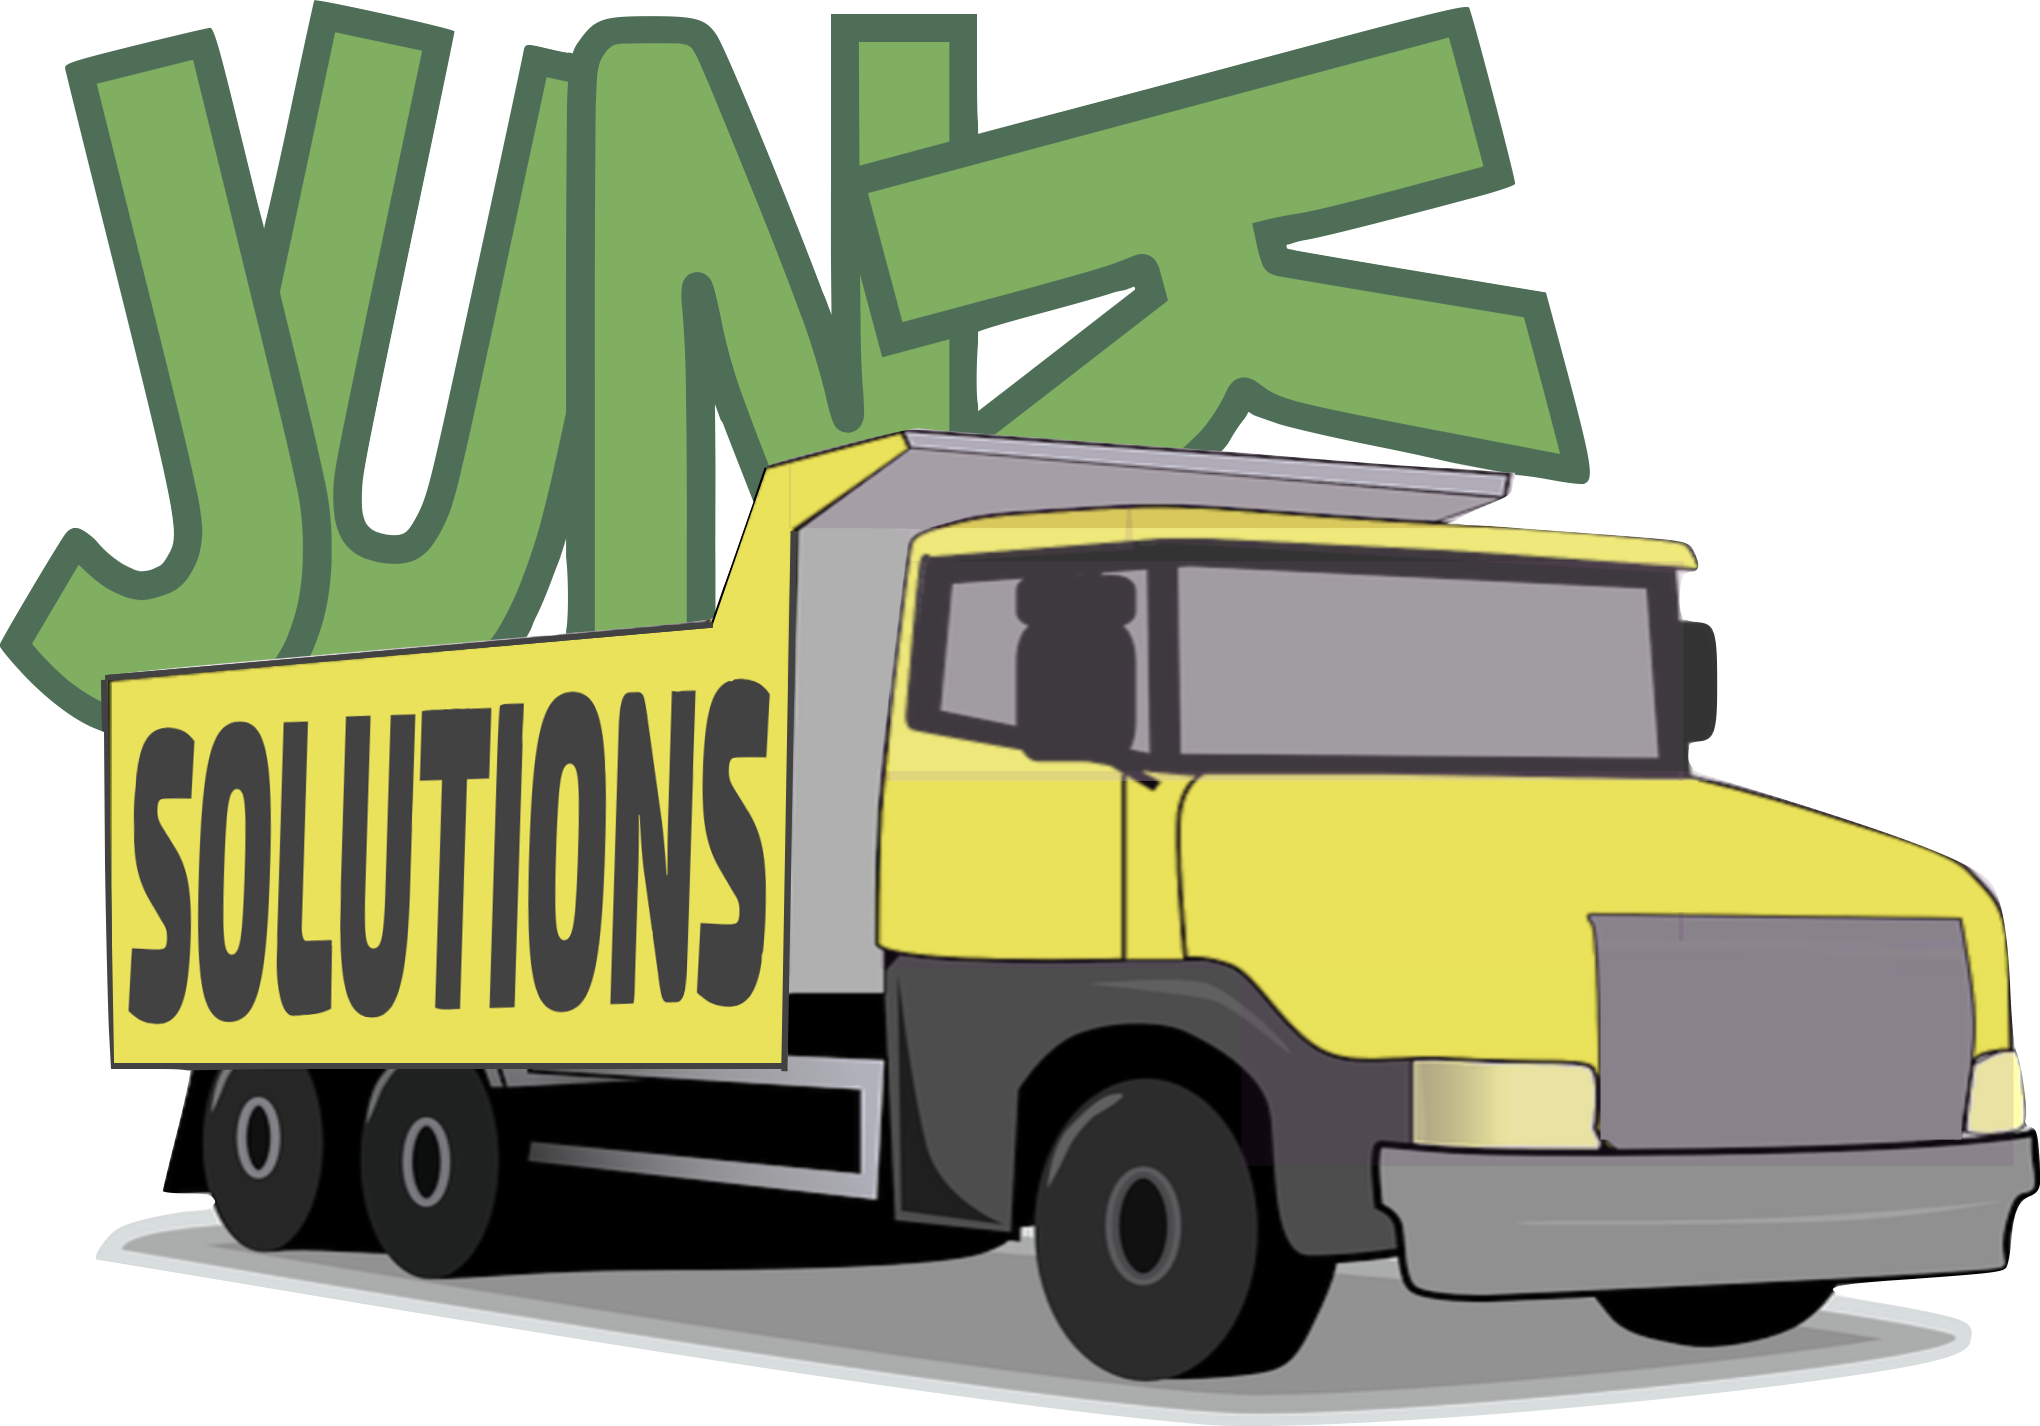 Junk Solutions